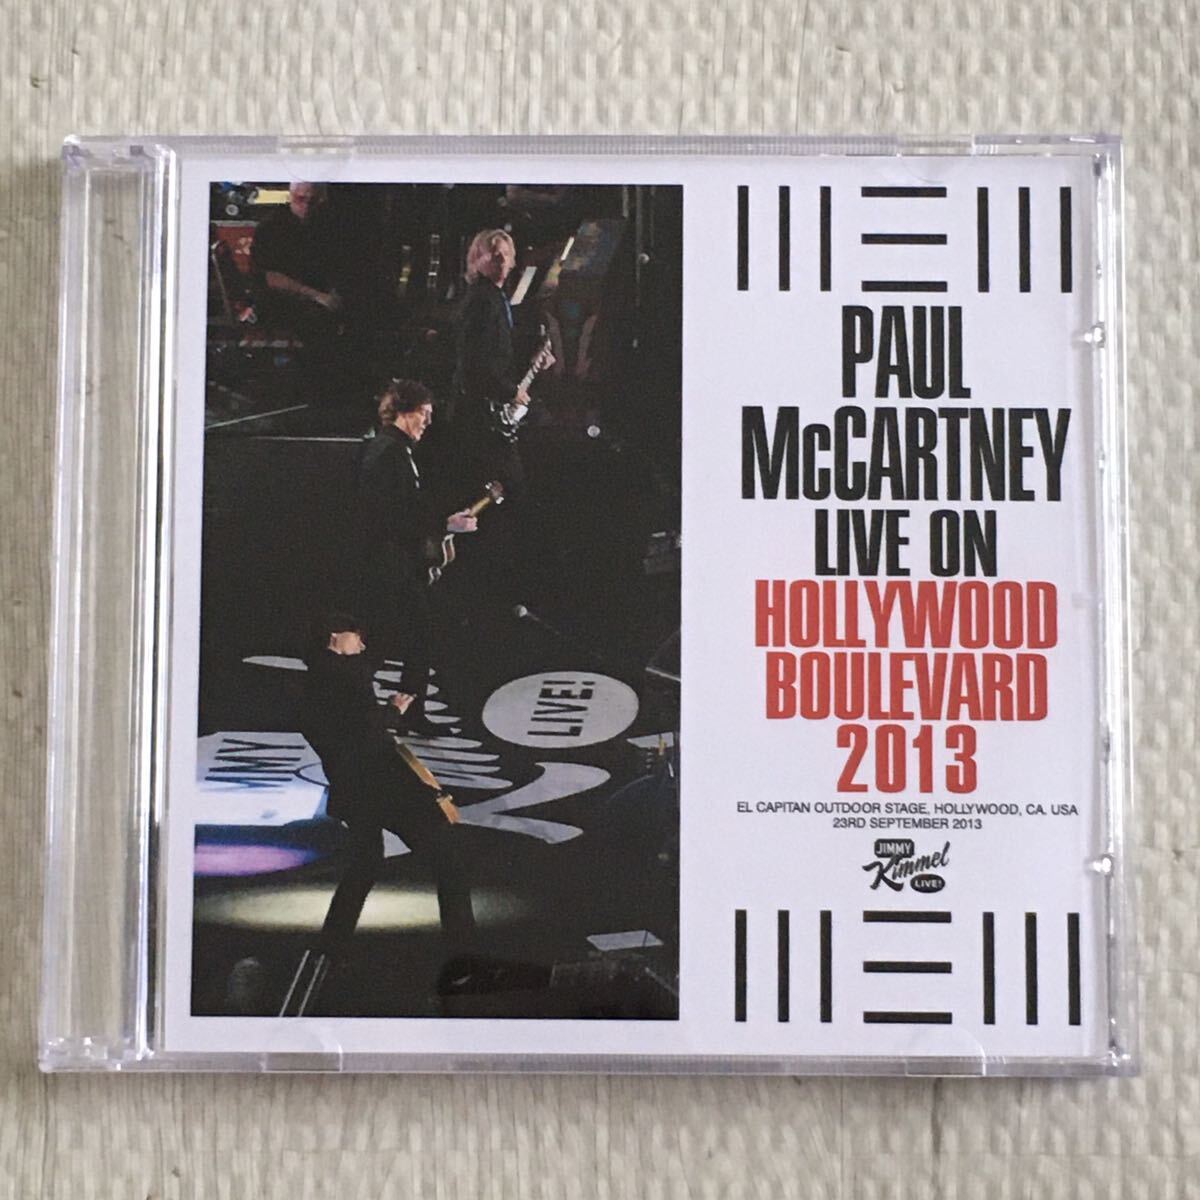 送料無料 評価1000達成記念 ロックCD+DVD Paul McCartney “Hollywood Boulevard 2013” 1CD+1DVD 無記名 日本盤_画像1